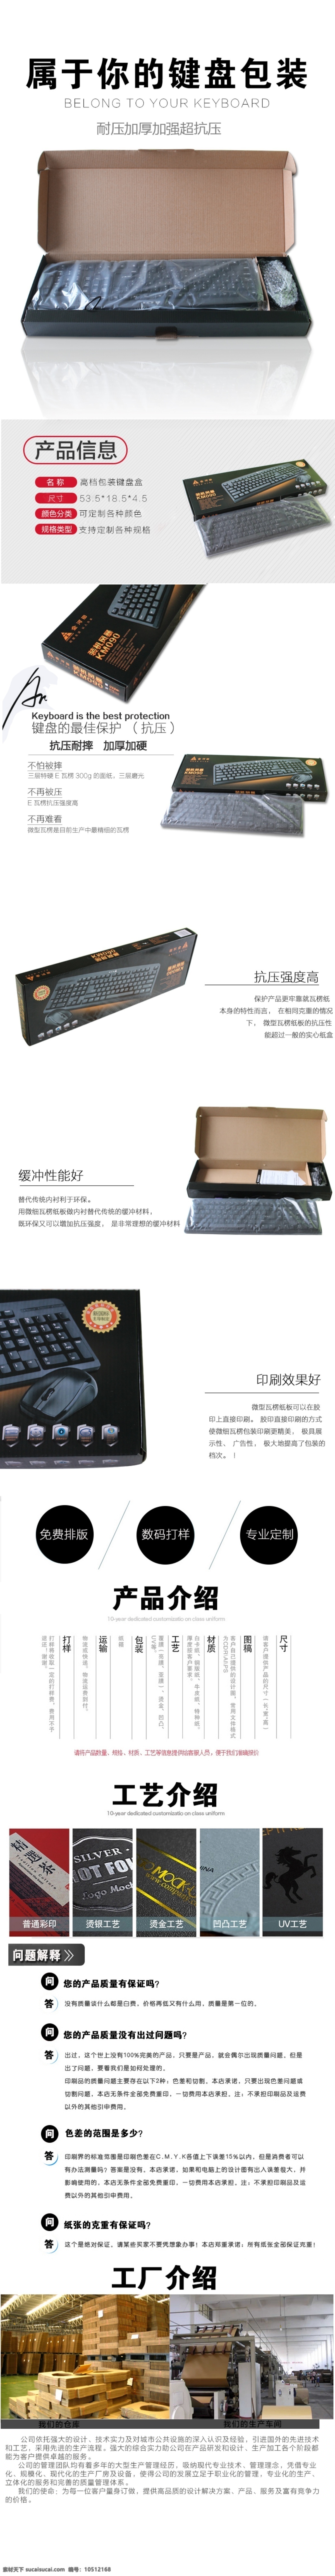 键盘纸箱 键盘 纸箱 淘宝素材 淘宝设计 淘宝模板下载 白色